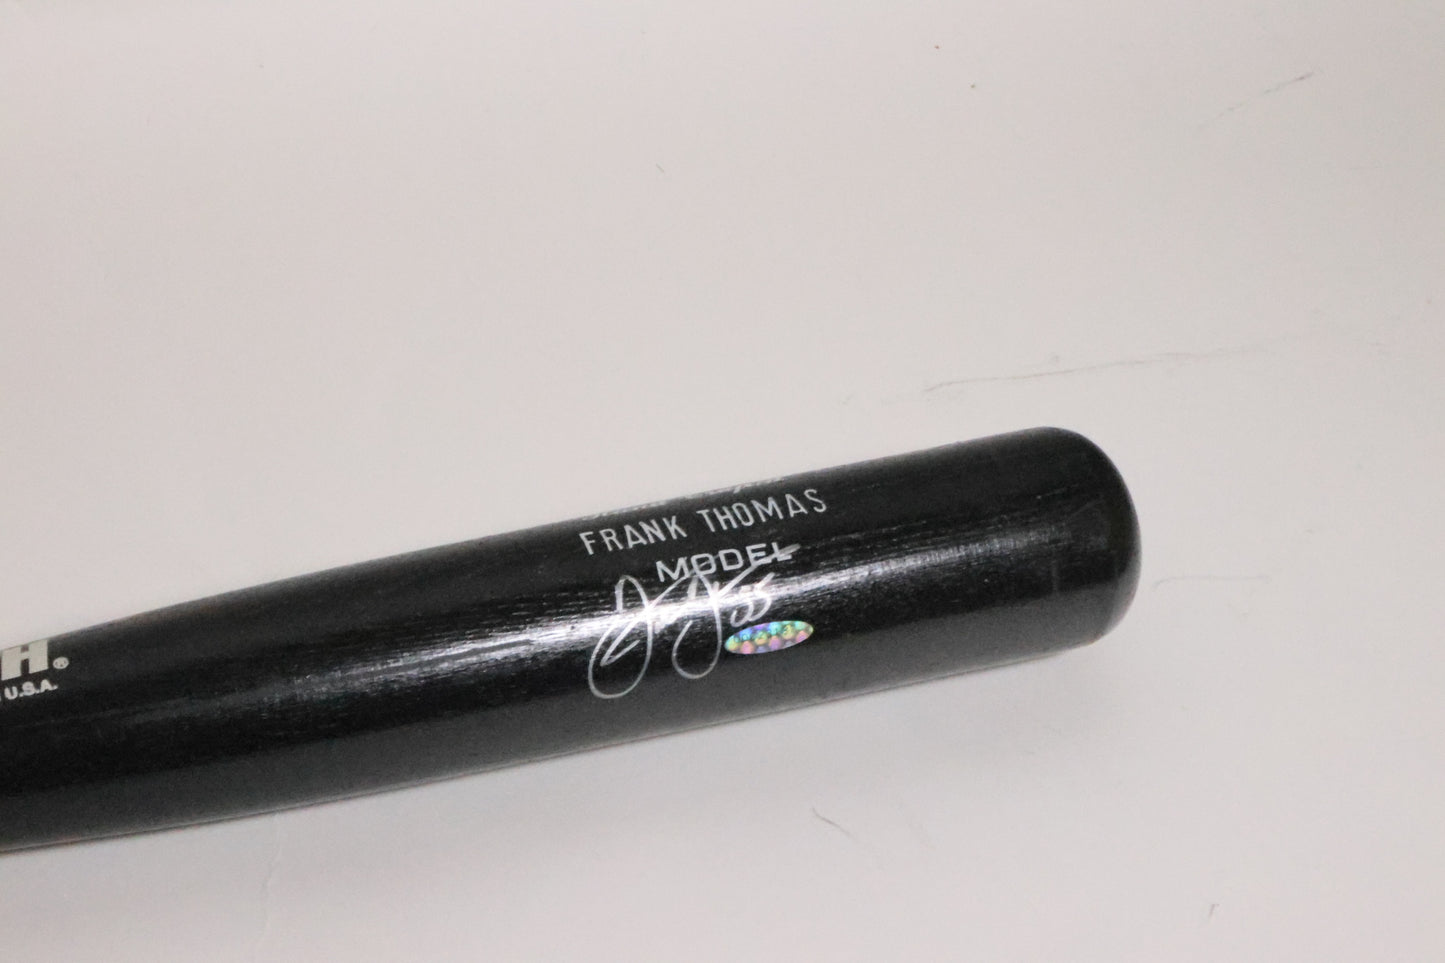 Frank Thomas Chicago White Sox Autographed Baseball Bat